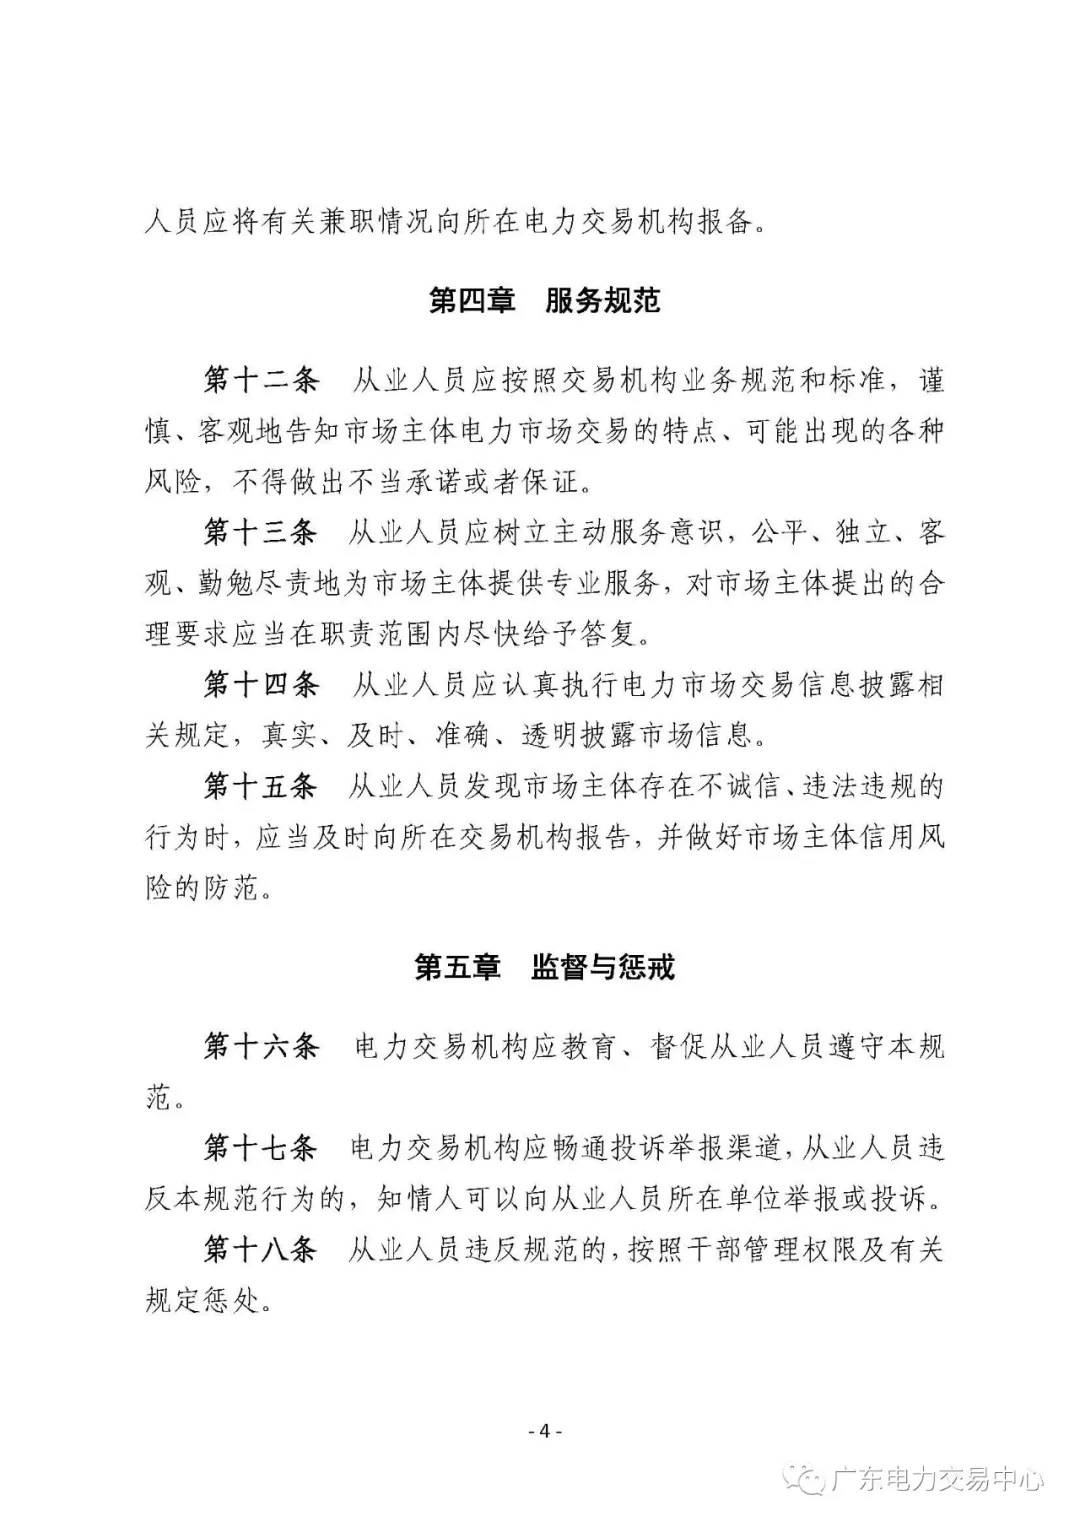 广州电力交易中心从业人员行为规范：禁止接受市场主体的委托以本人或他人名义参加电力交易